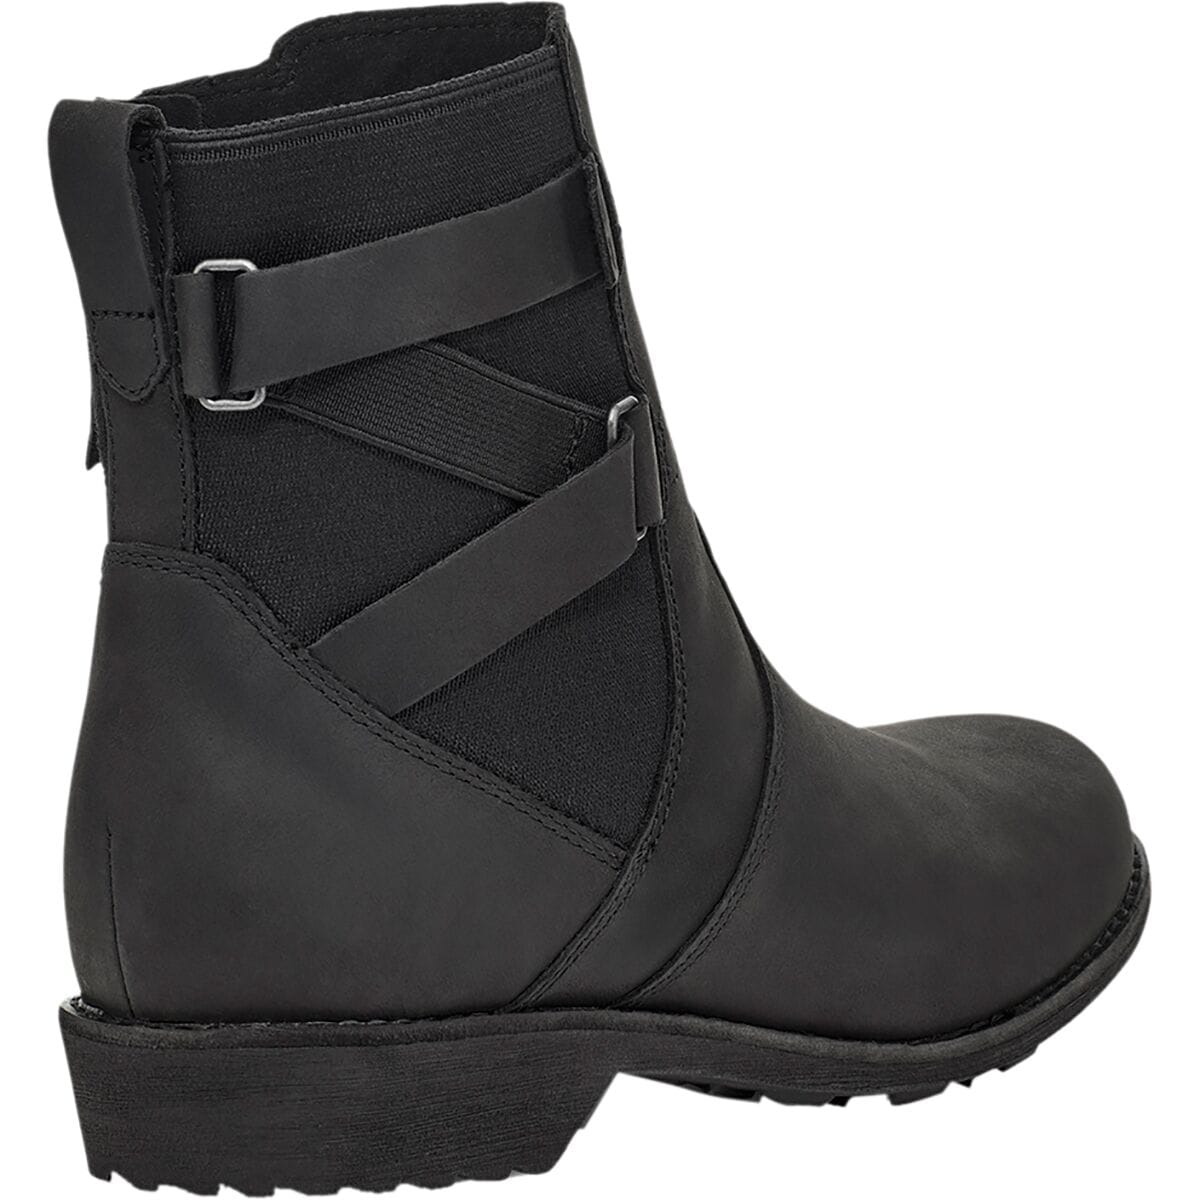 Teva Ellery Ankle Waterproof Boot - Women's | Backcountry.com